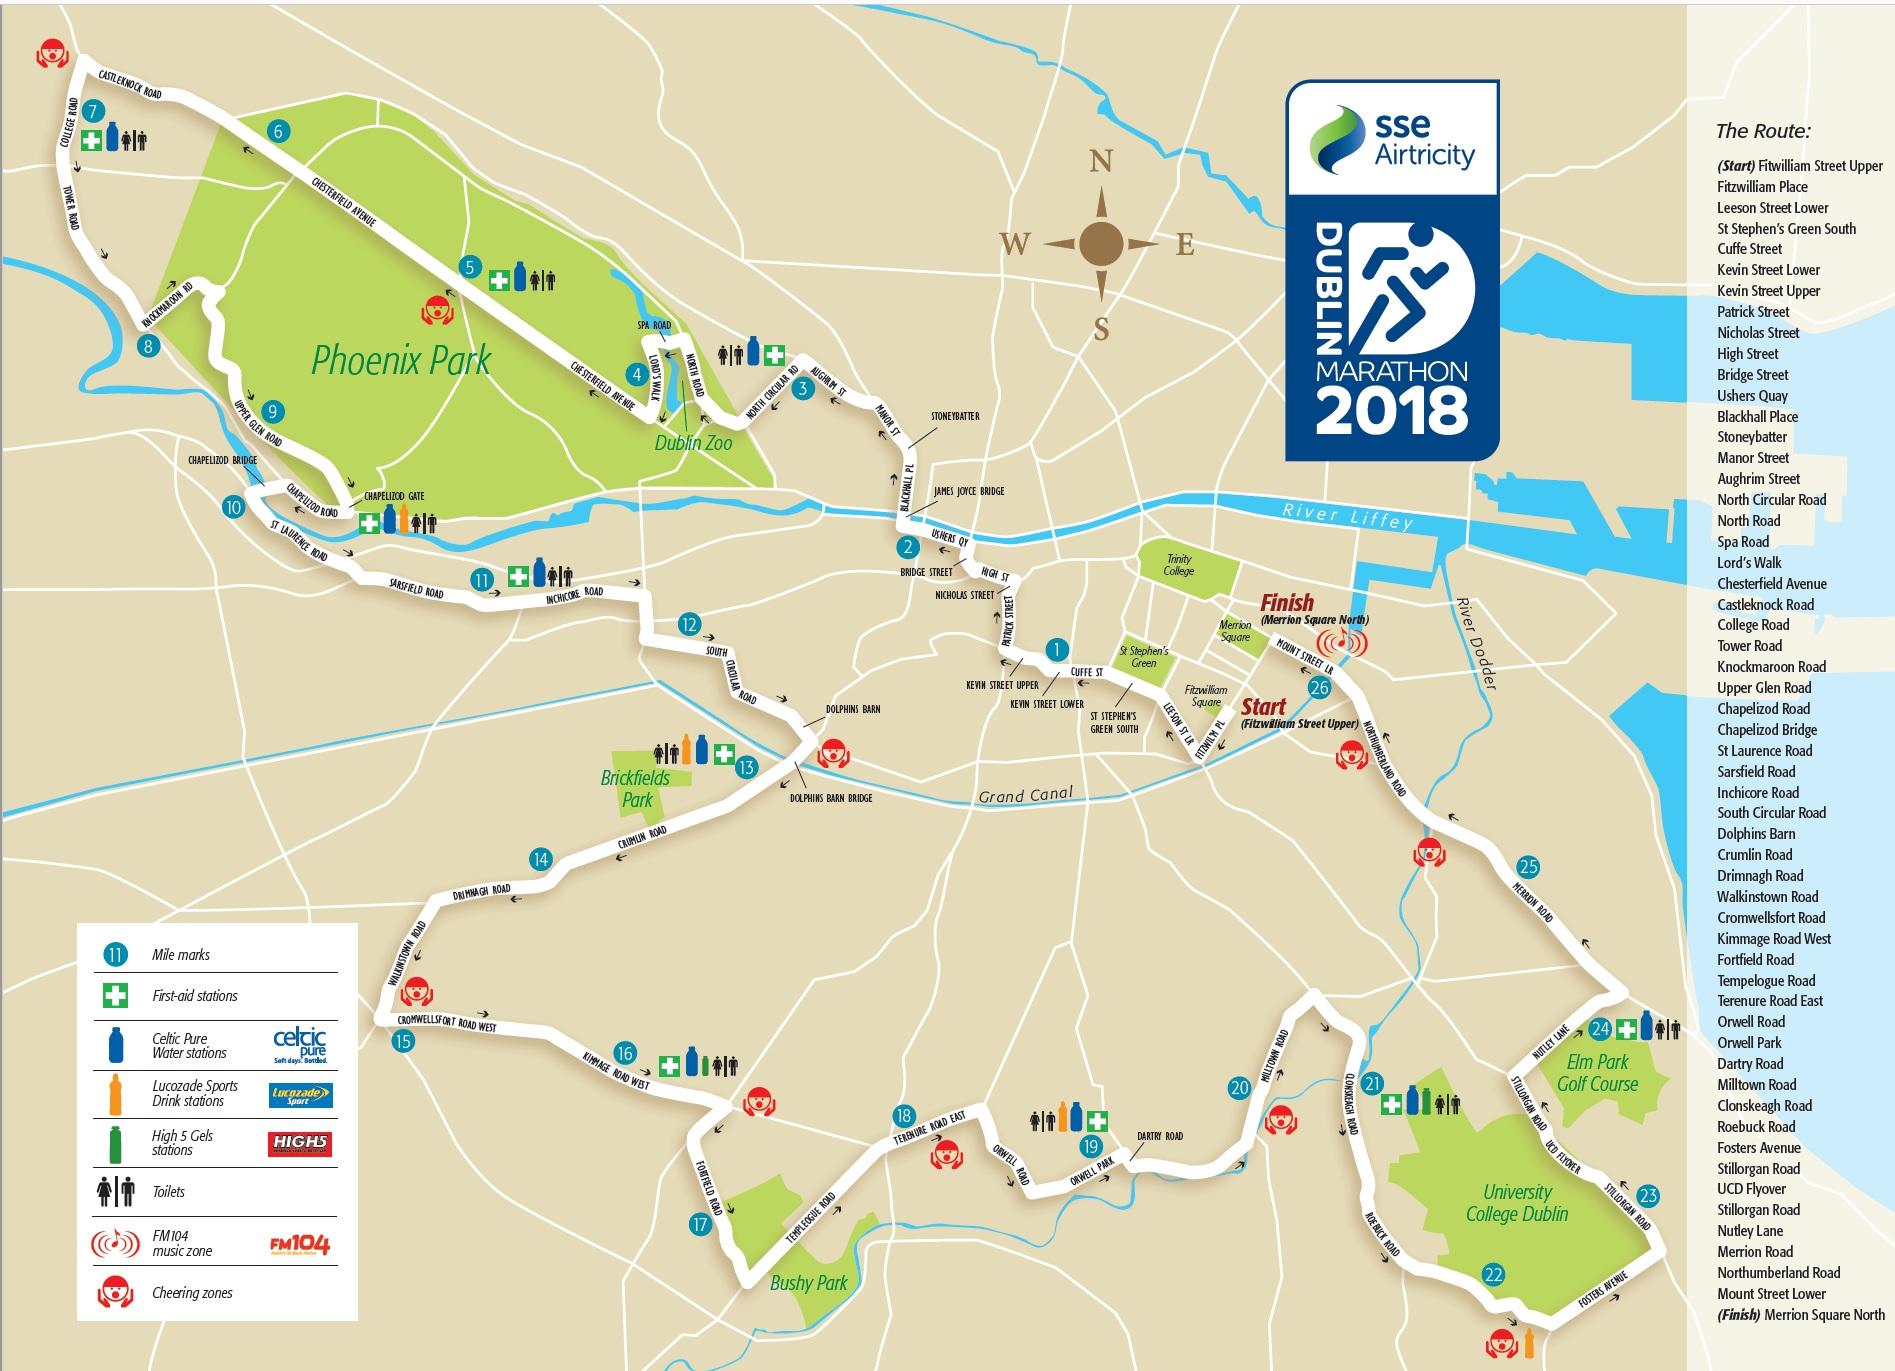 Marathon de Dublin carte de la ville de Dublin parcours du marathon de